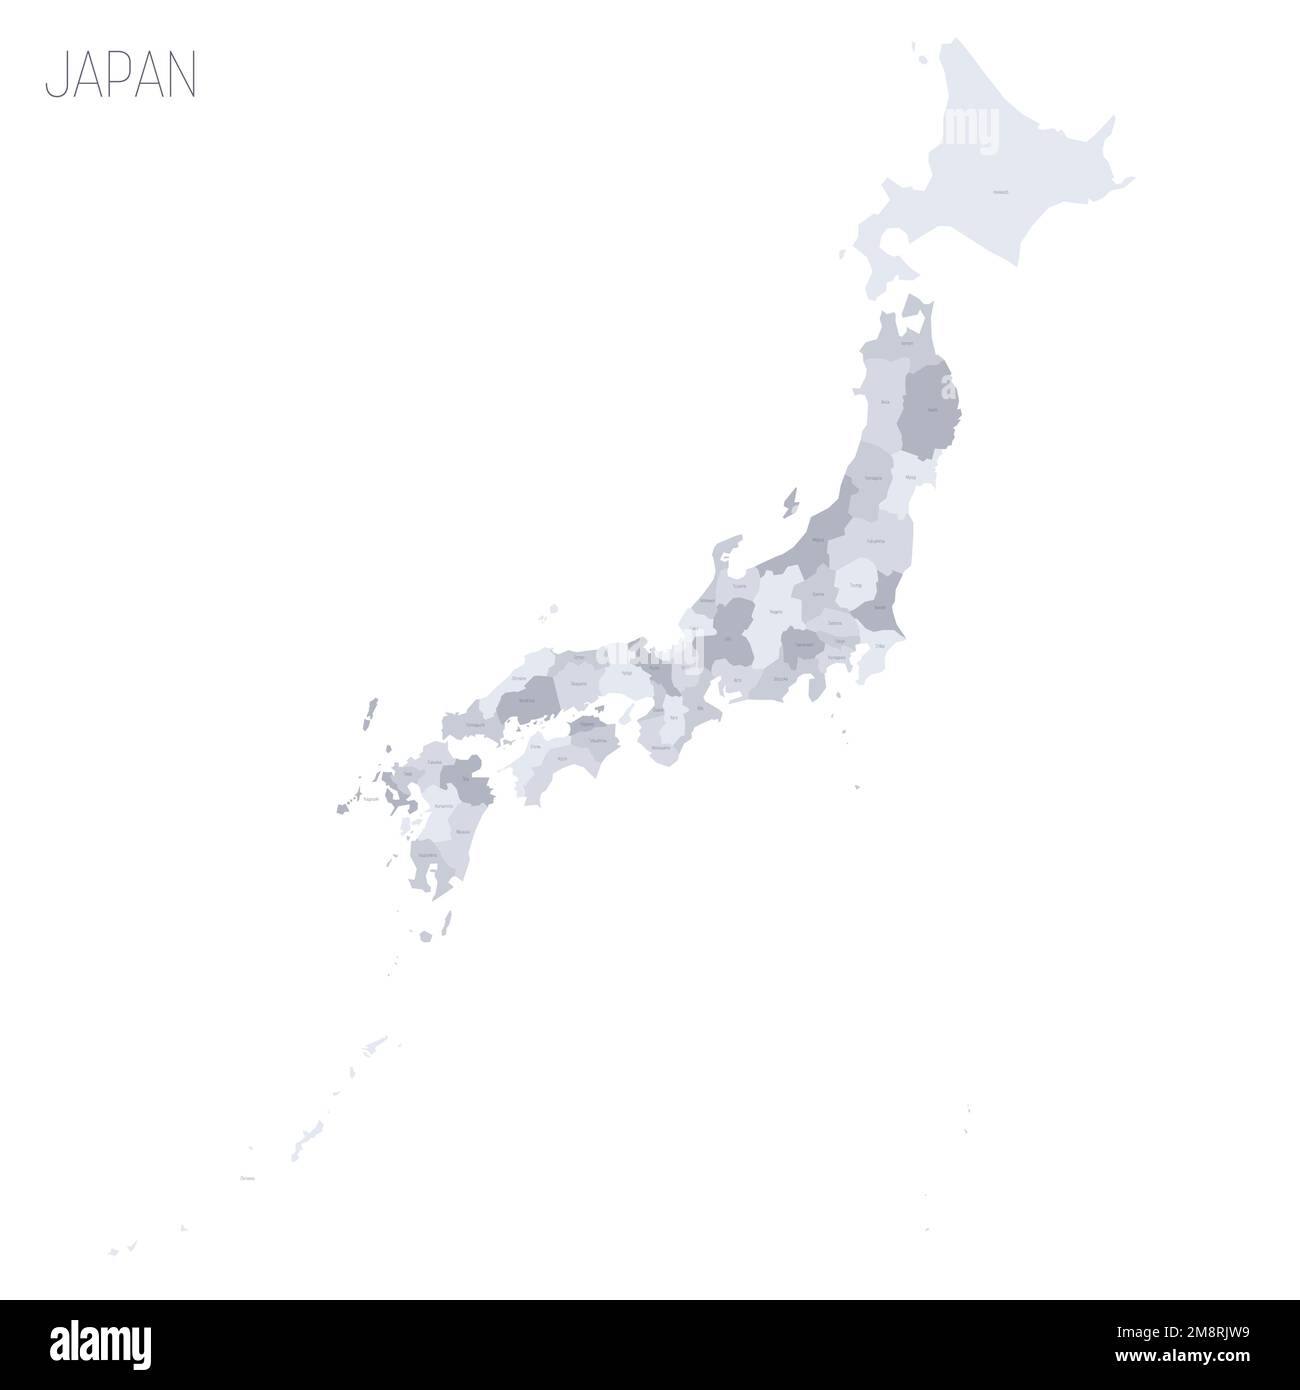 Politische Karte der Verwaltungseinheiten Japans - Präfekturen, Metropilis Tokio, Territorium Hokaido und städtische Präfekturen Kyoto und Osaka. Graue Vektorkarte mit Beschriftungen. Stock Vektor